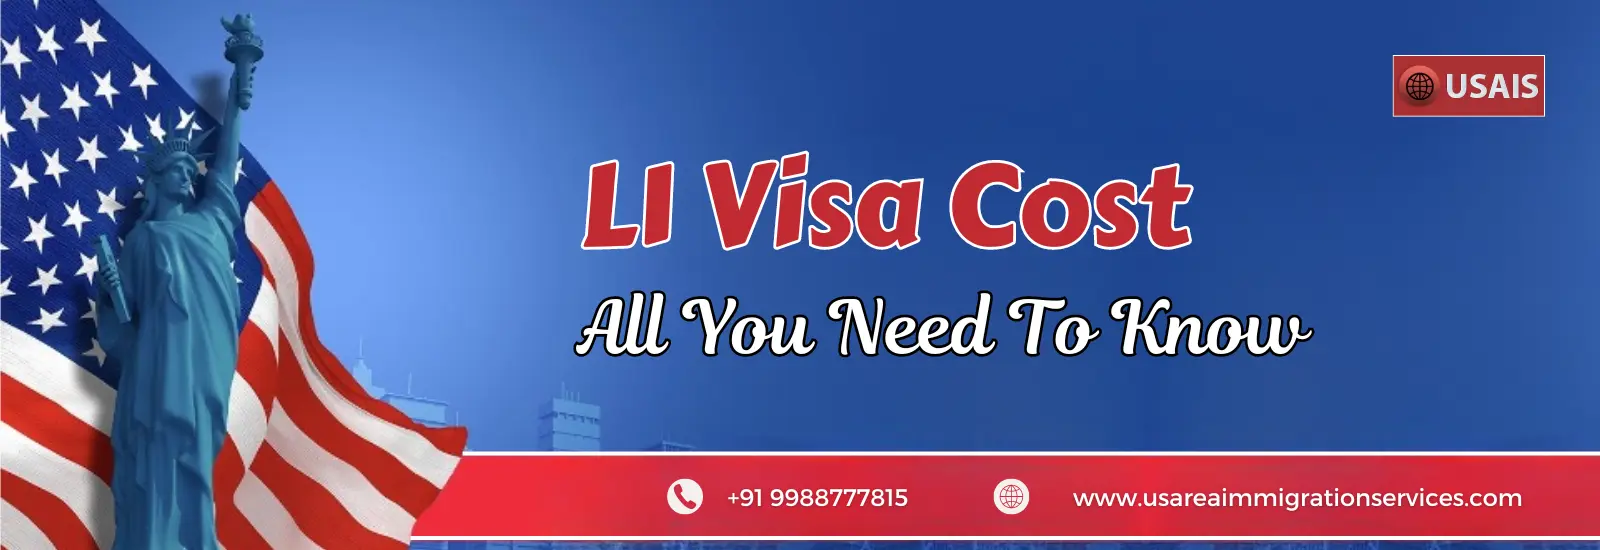 L1-Visa-Cost